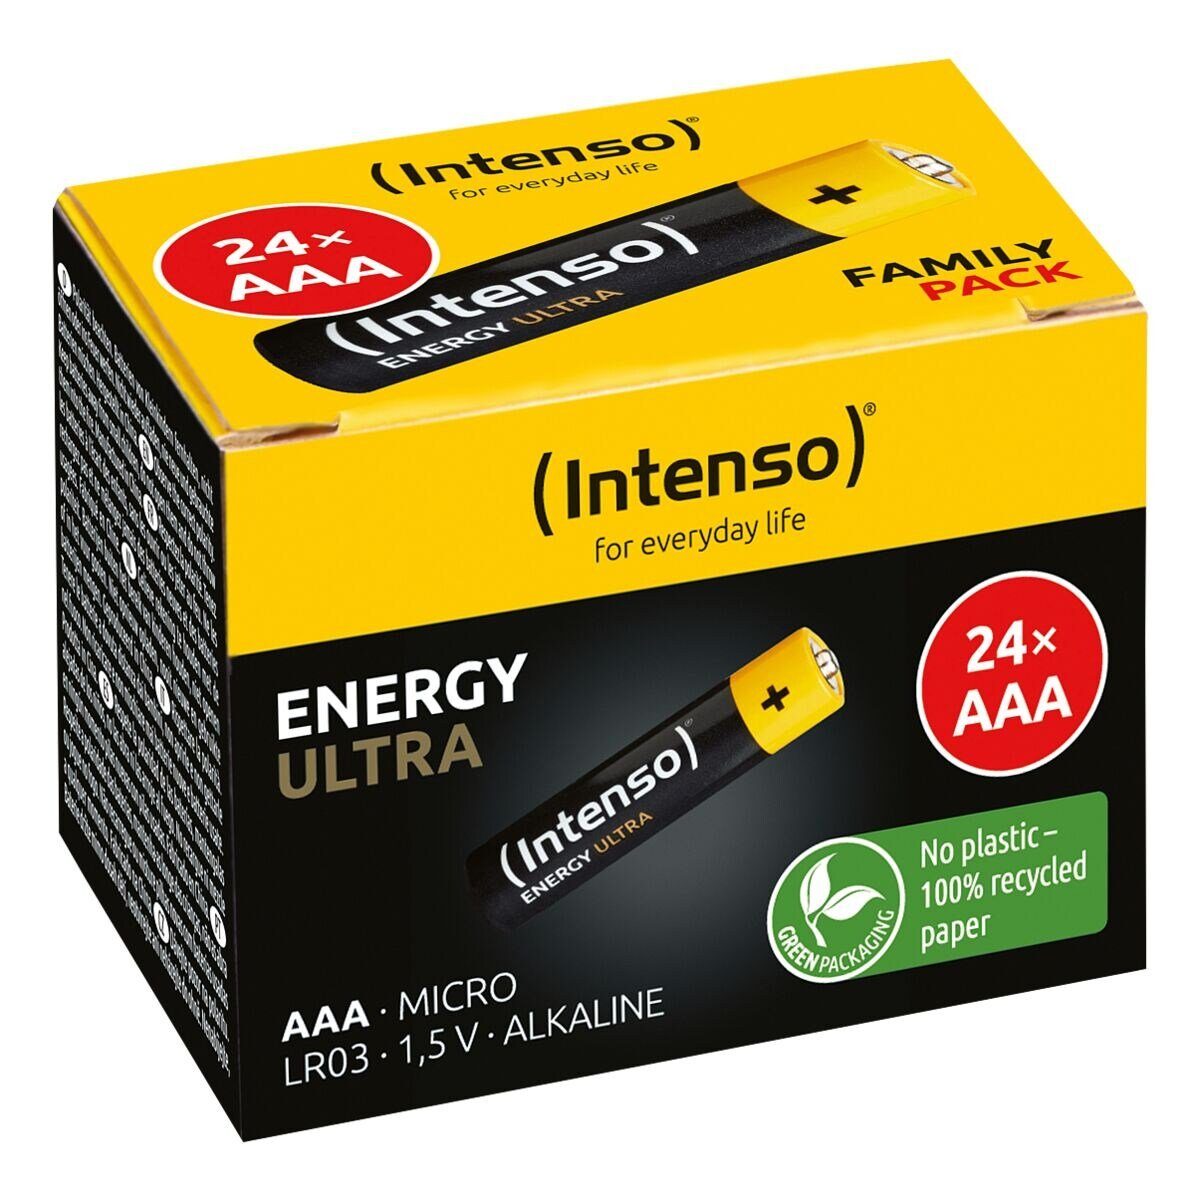 Intenso / 24 Alkali AAA V, Micro Batterie, (1.5 LR3 / / Ultra 1,5 Energy St), LR03, V,